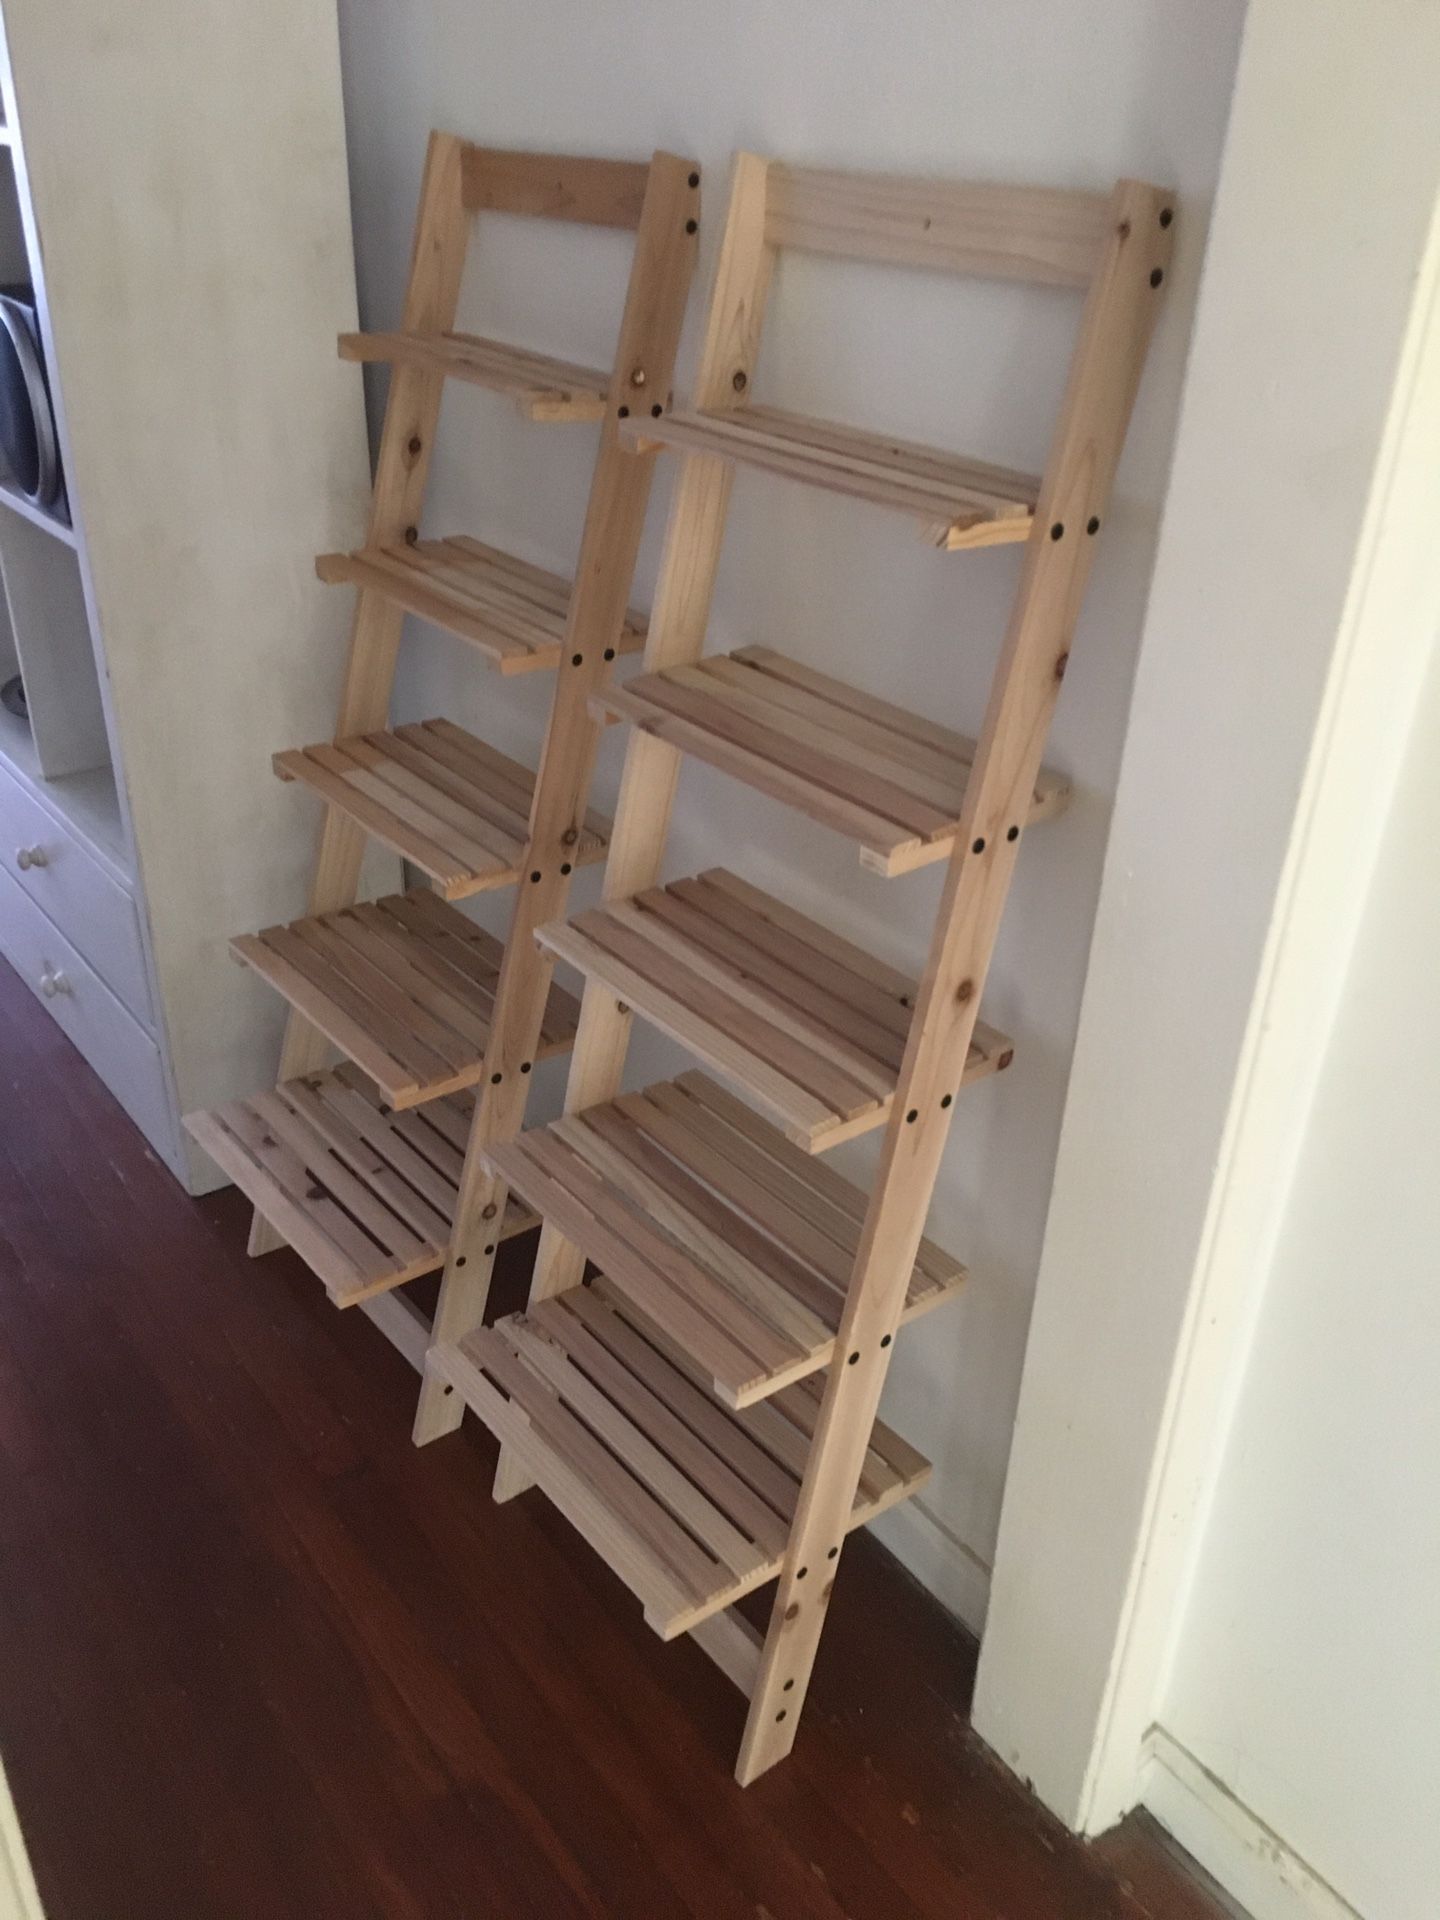 2 Matching Ladder Wooden 5 Tier Bookshelves.